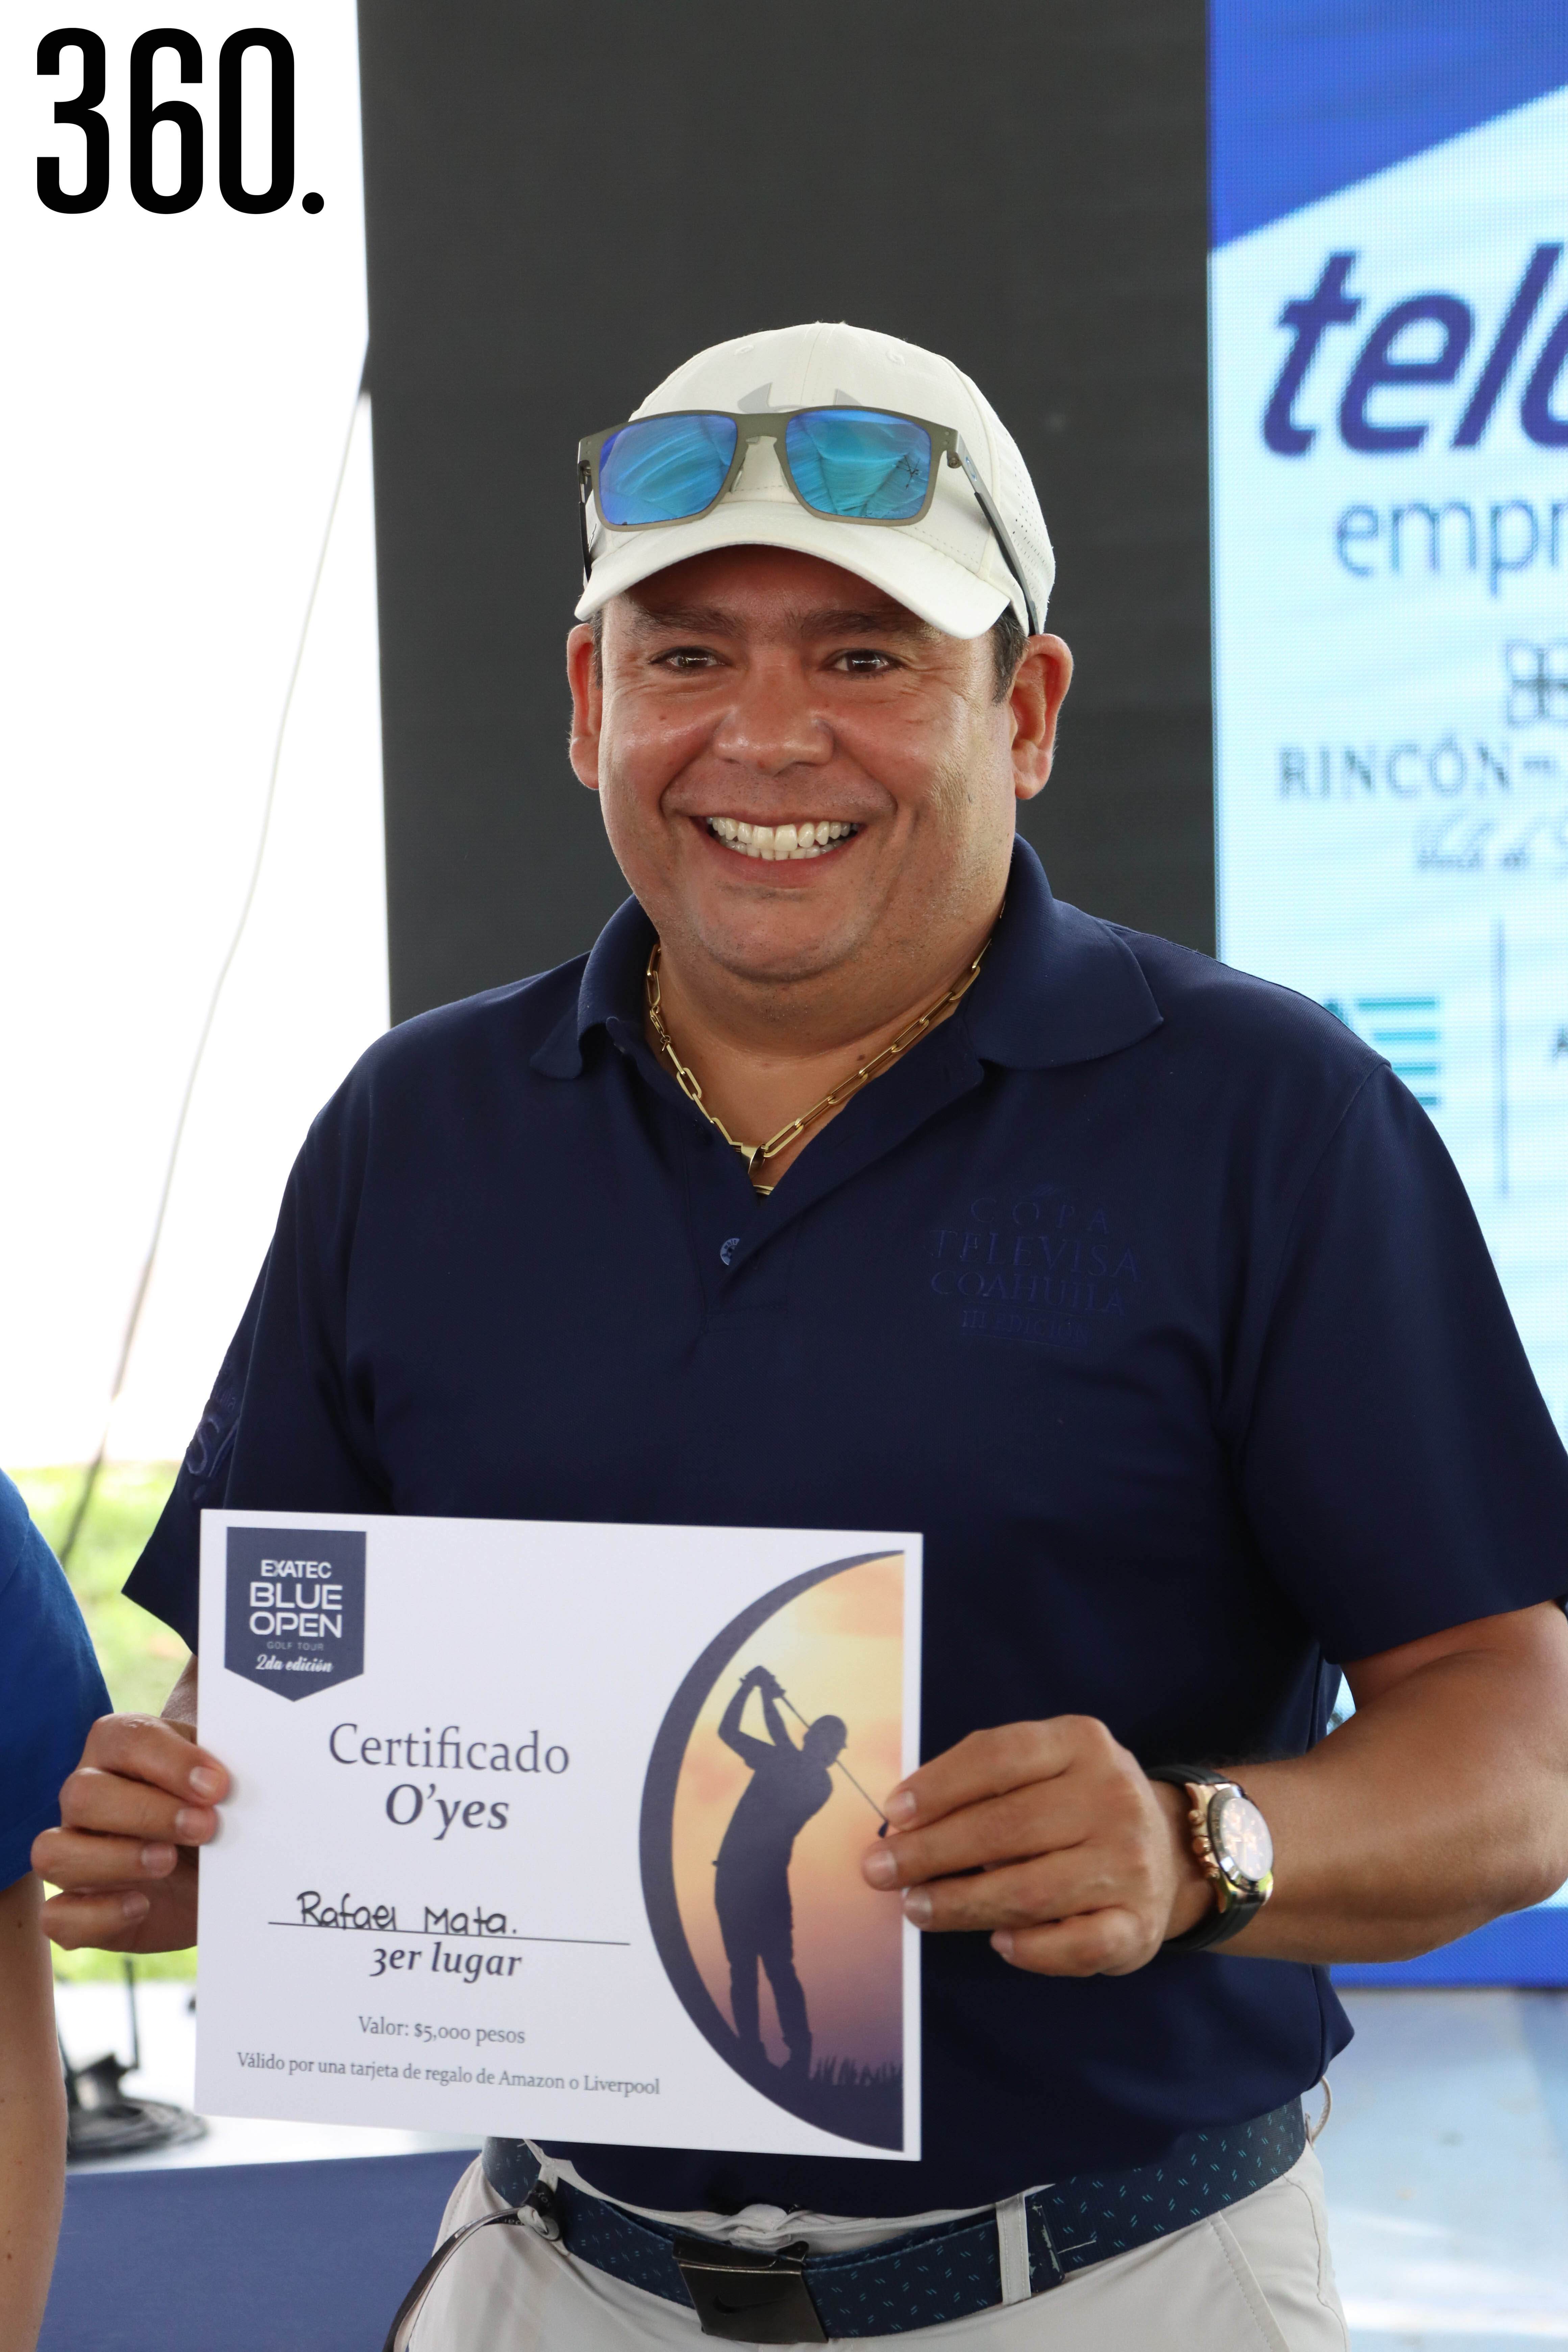 Rafael Mata, 3er lugar en O’Yes del Hoyo 18.